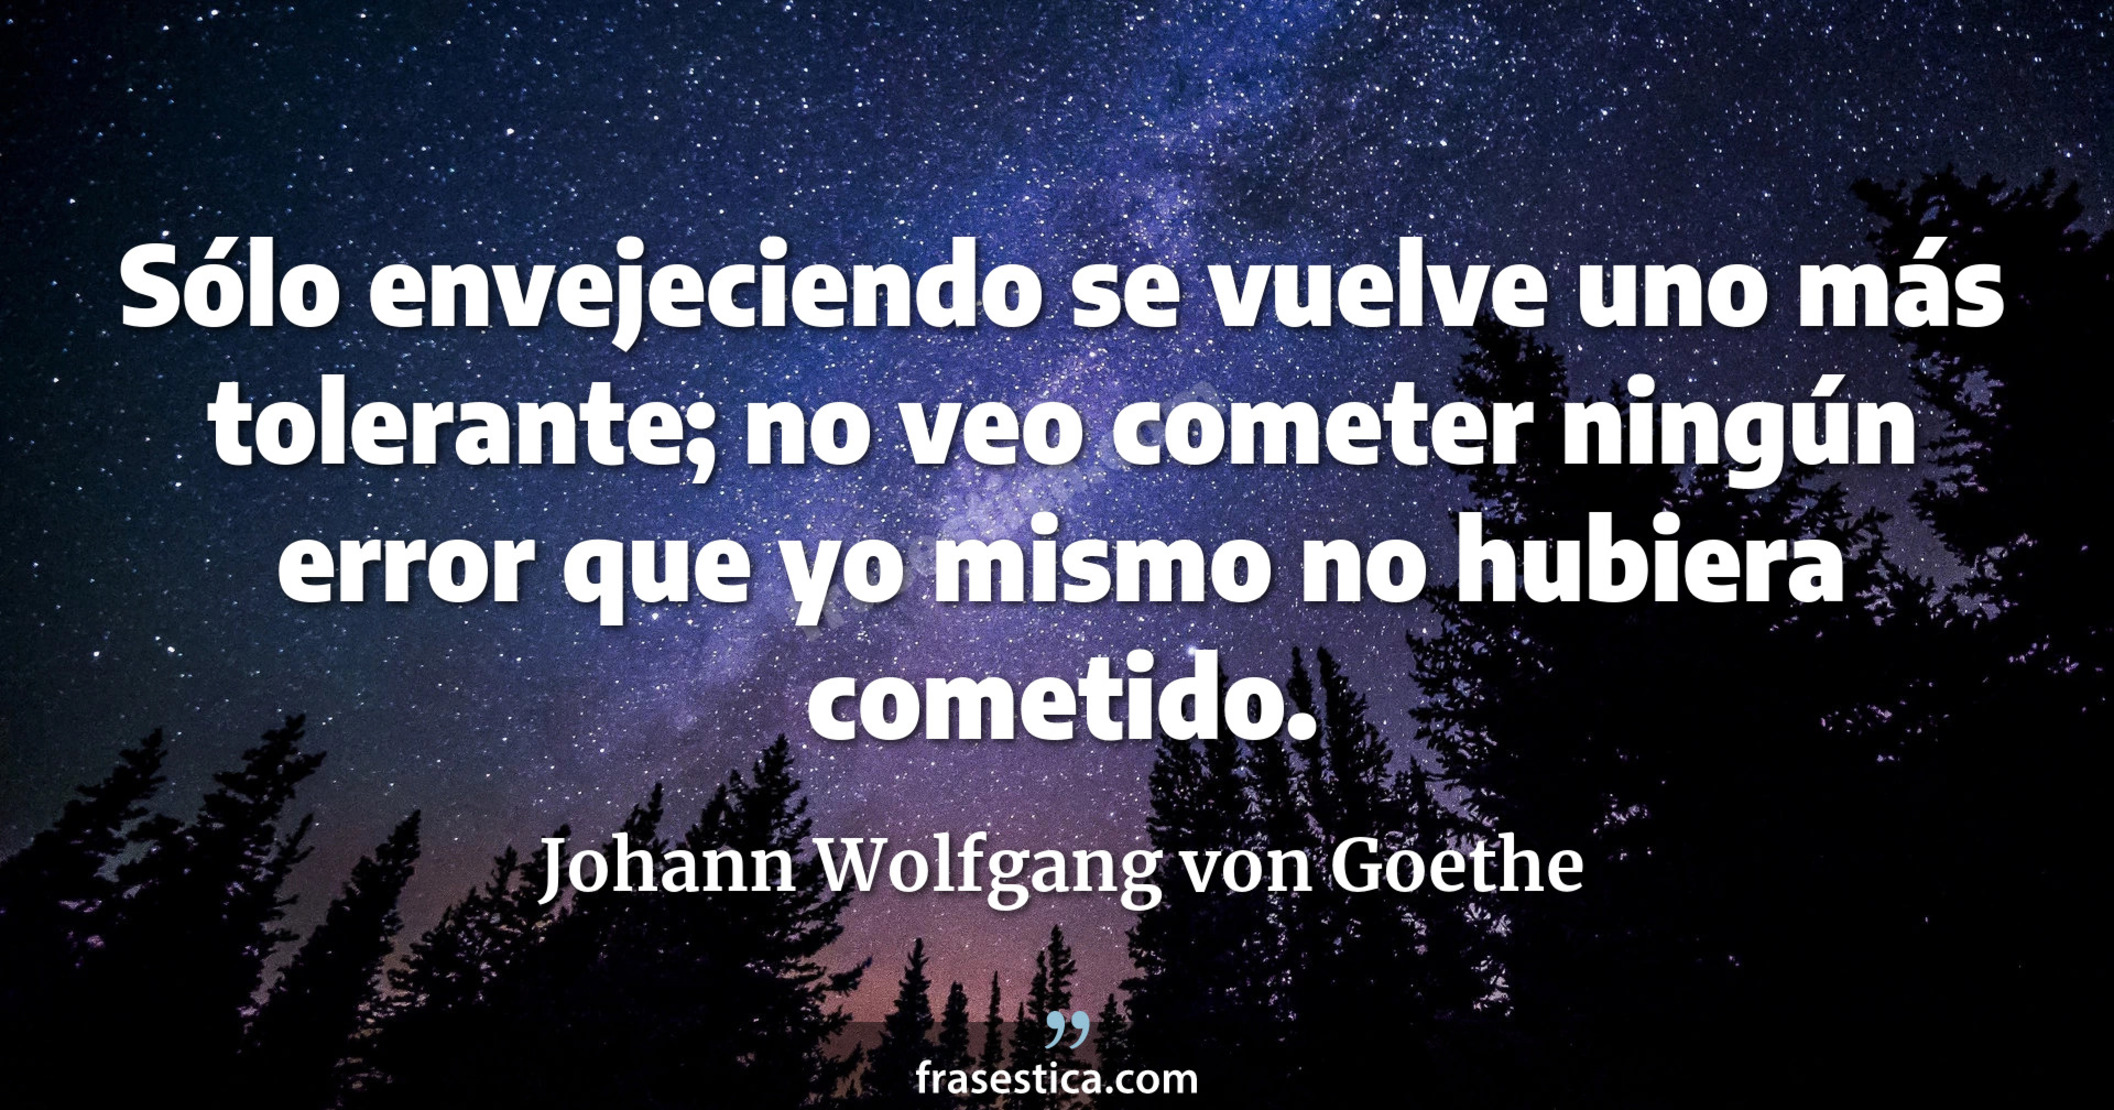 Sólo envejeciendo se vuelve uno más tolerante; no veo cometer ningún error que yo mismo no hubiera cometido. - Johann Wolfgang von Goethe